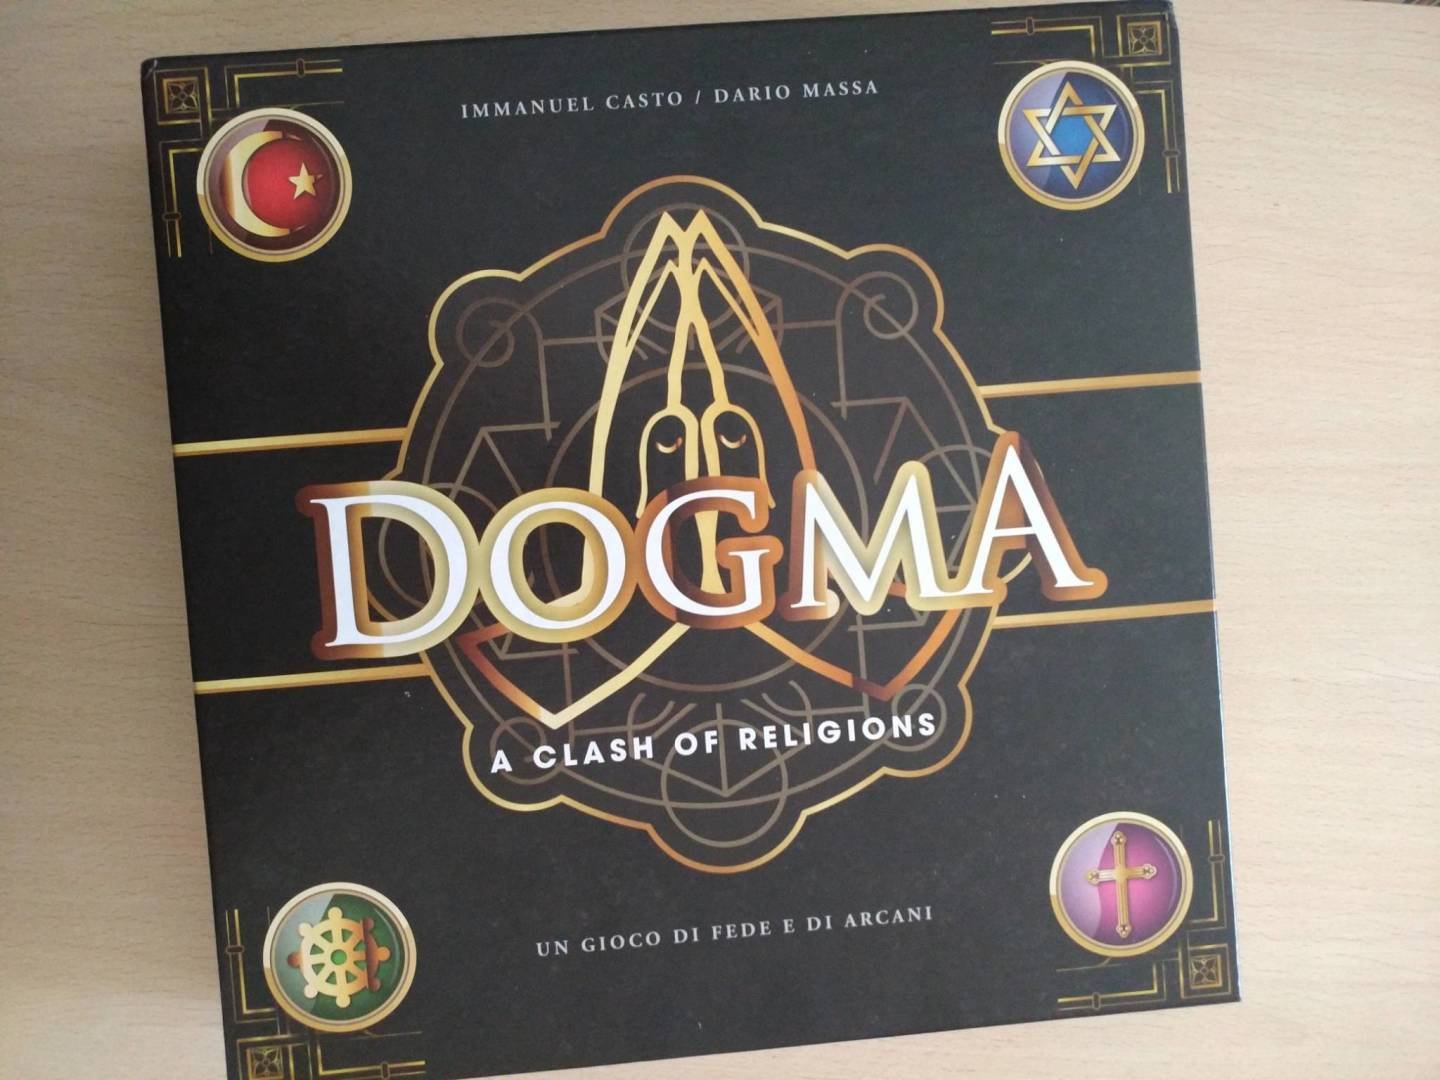 Immagine di Dogma: A Clash of Religions, la recensione